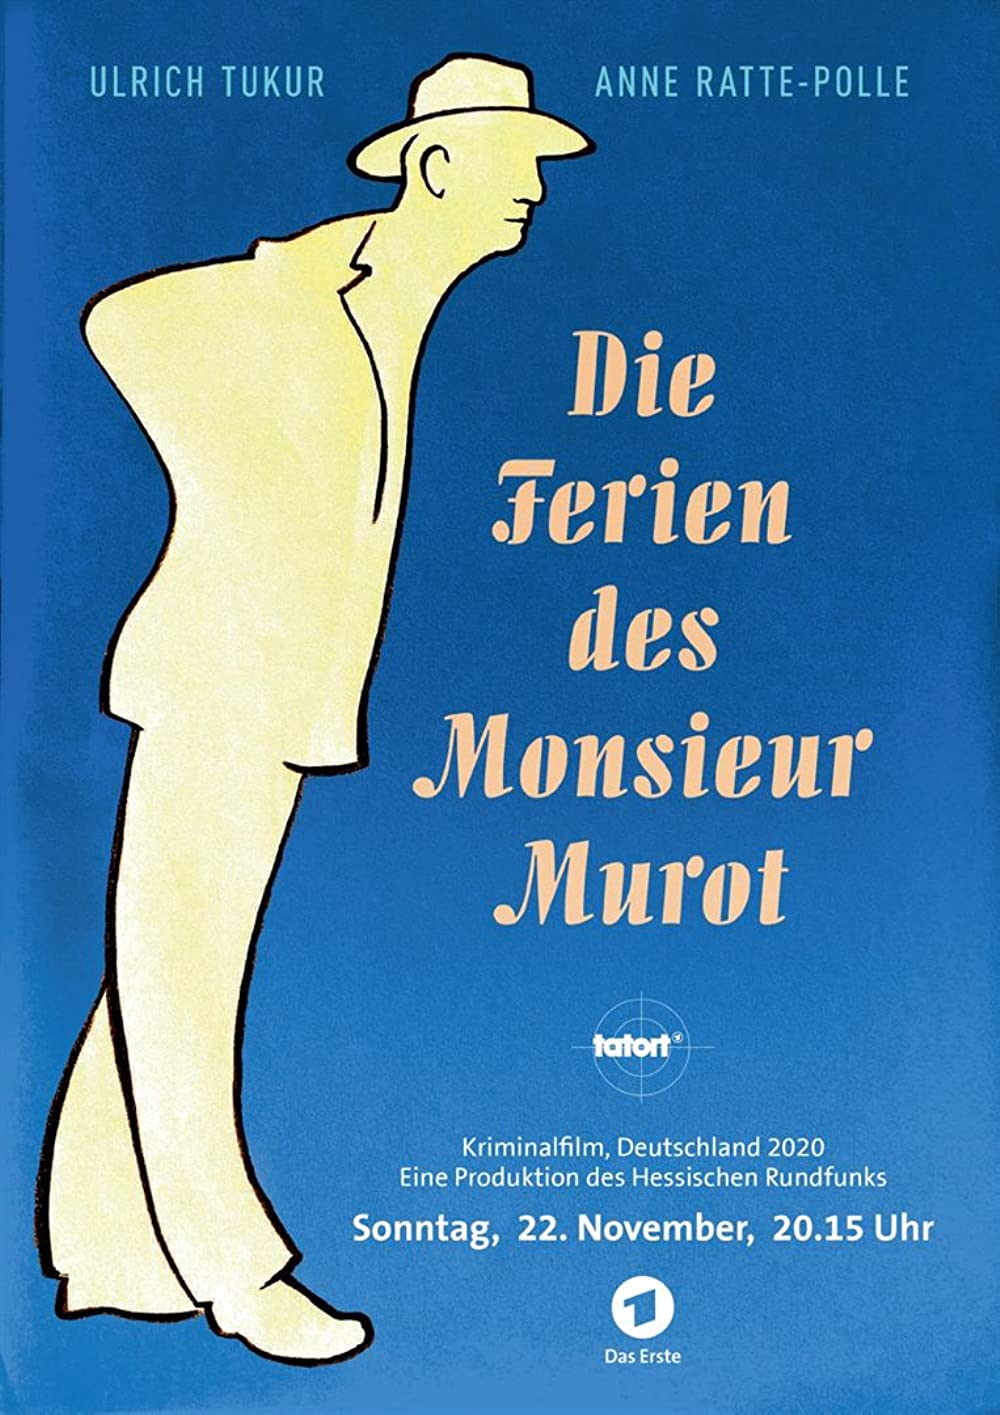 Filmbeschreibung zu Die Ferien des Monsieur Hulot (OV)